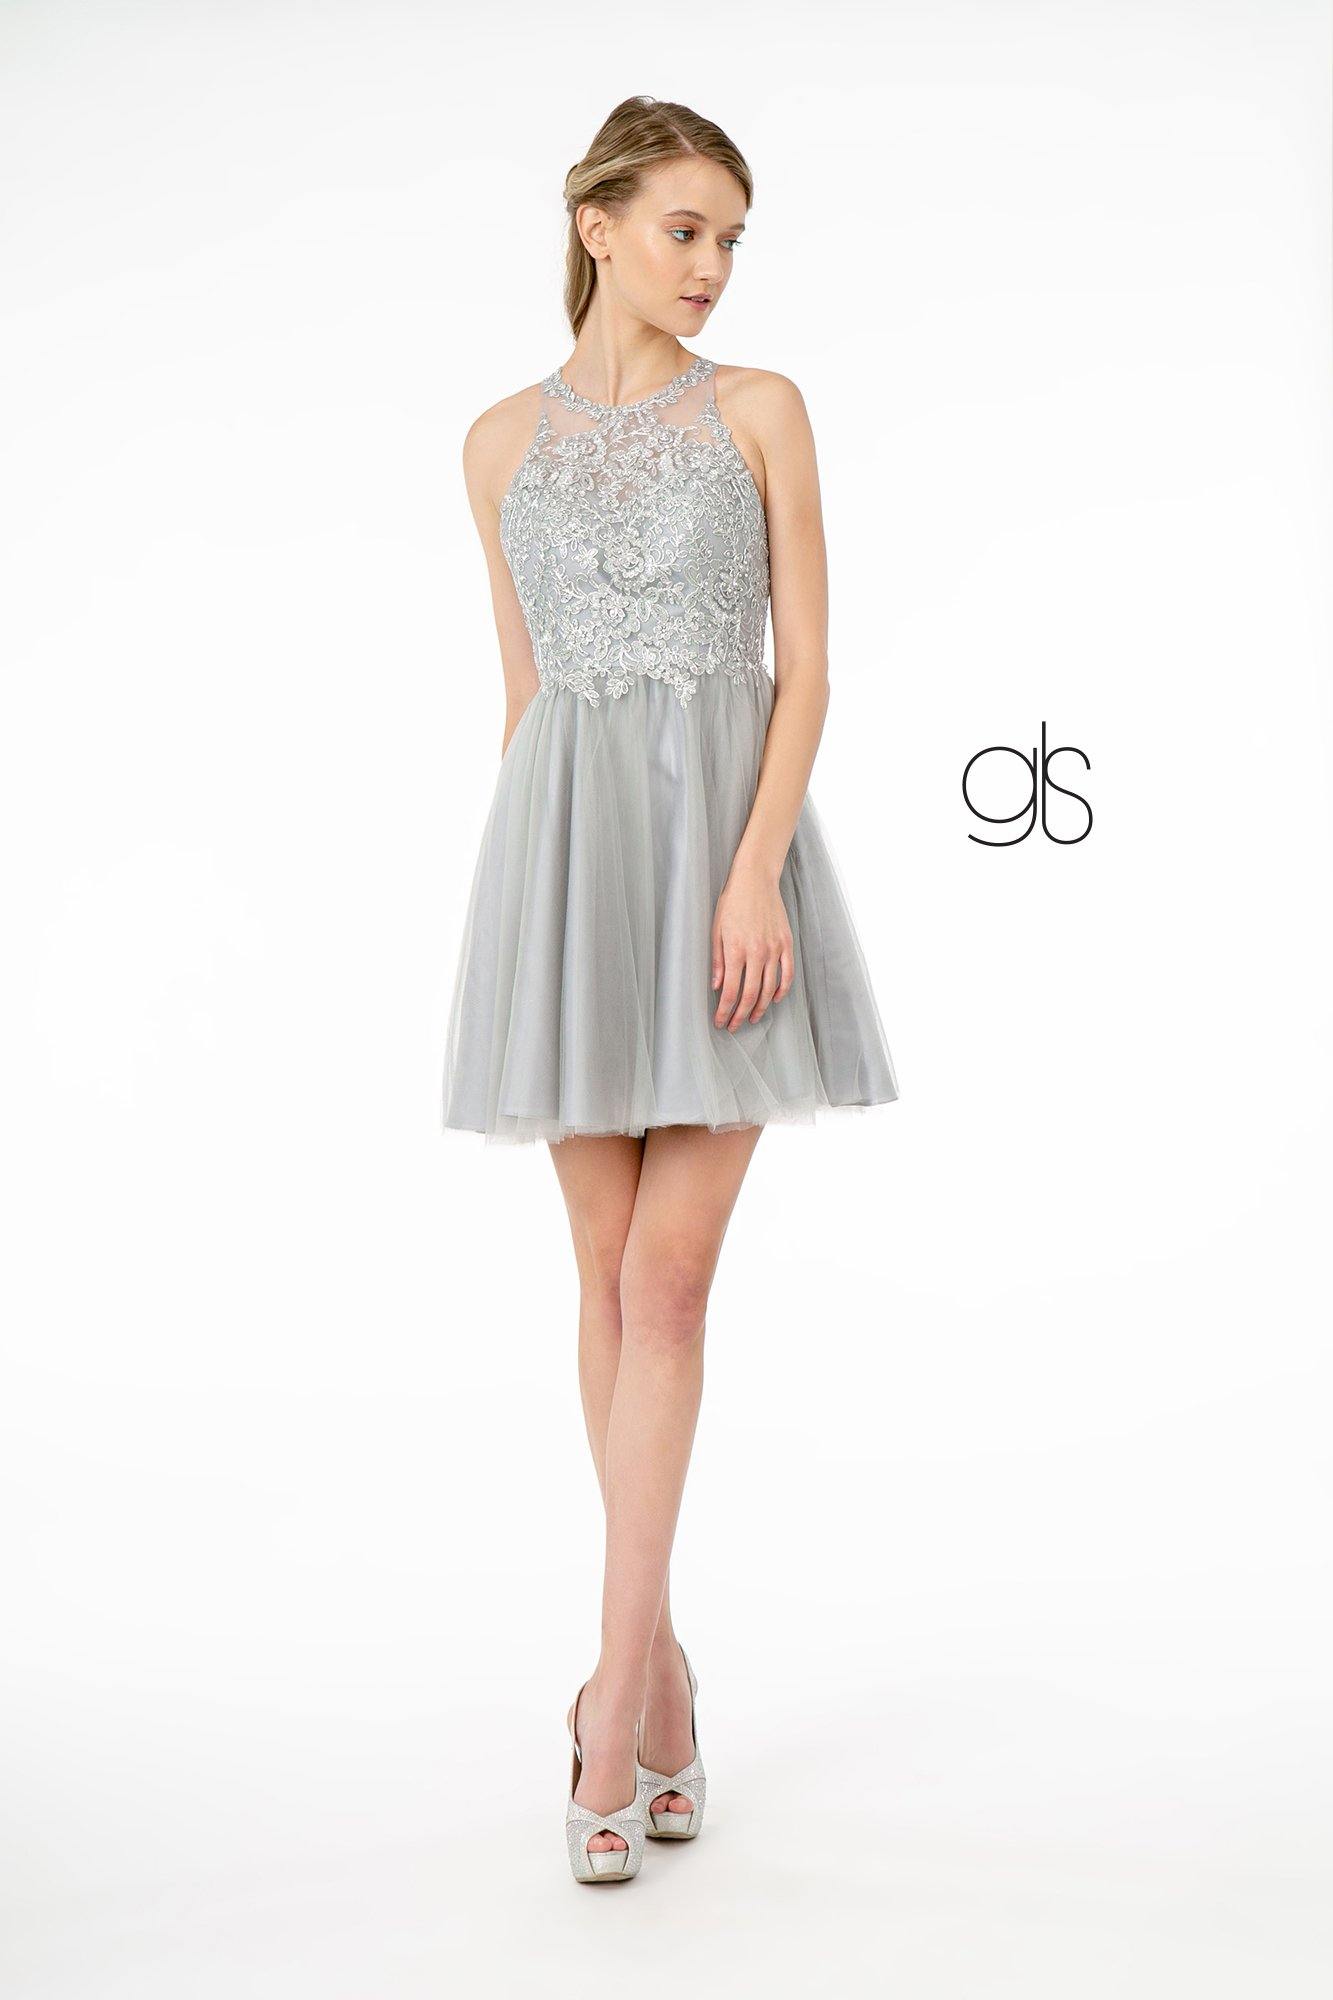 Jewel Embellished Embroidery Tulle Short Dress w/ Strap Back - The Dress Outlet Elizabeth K